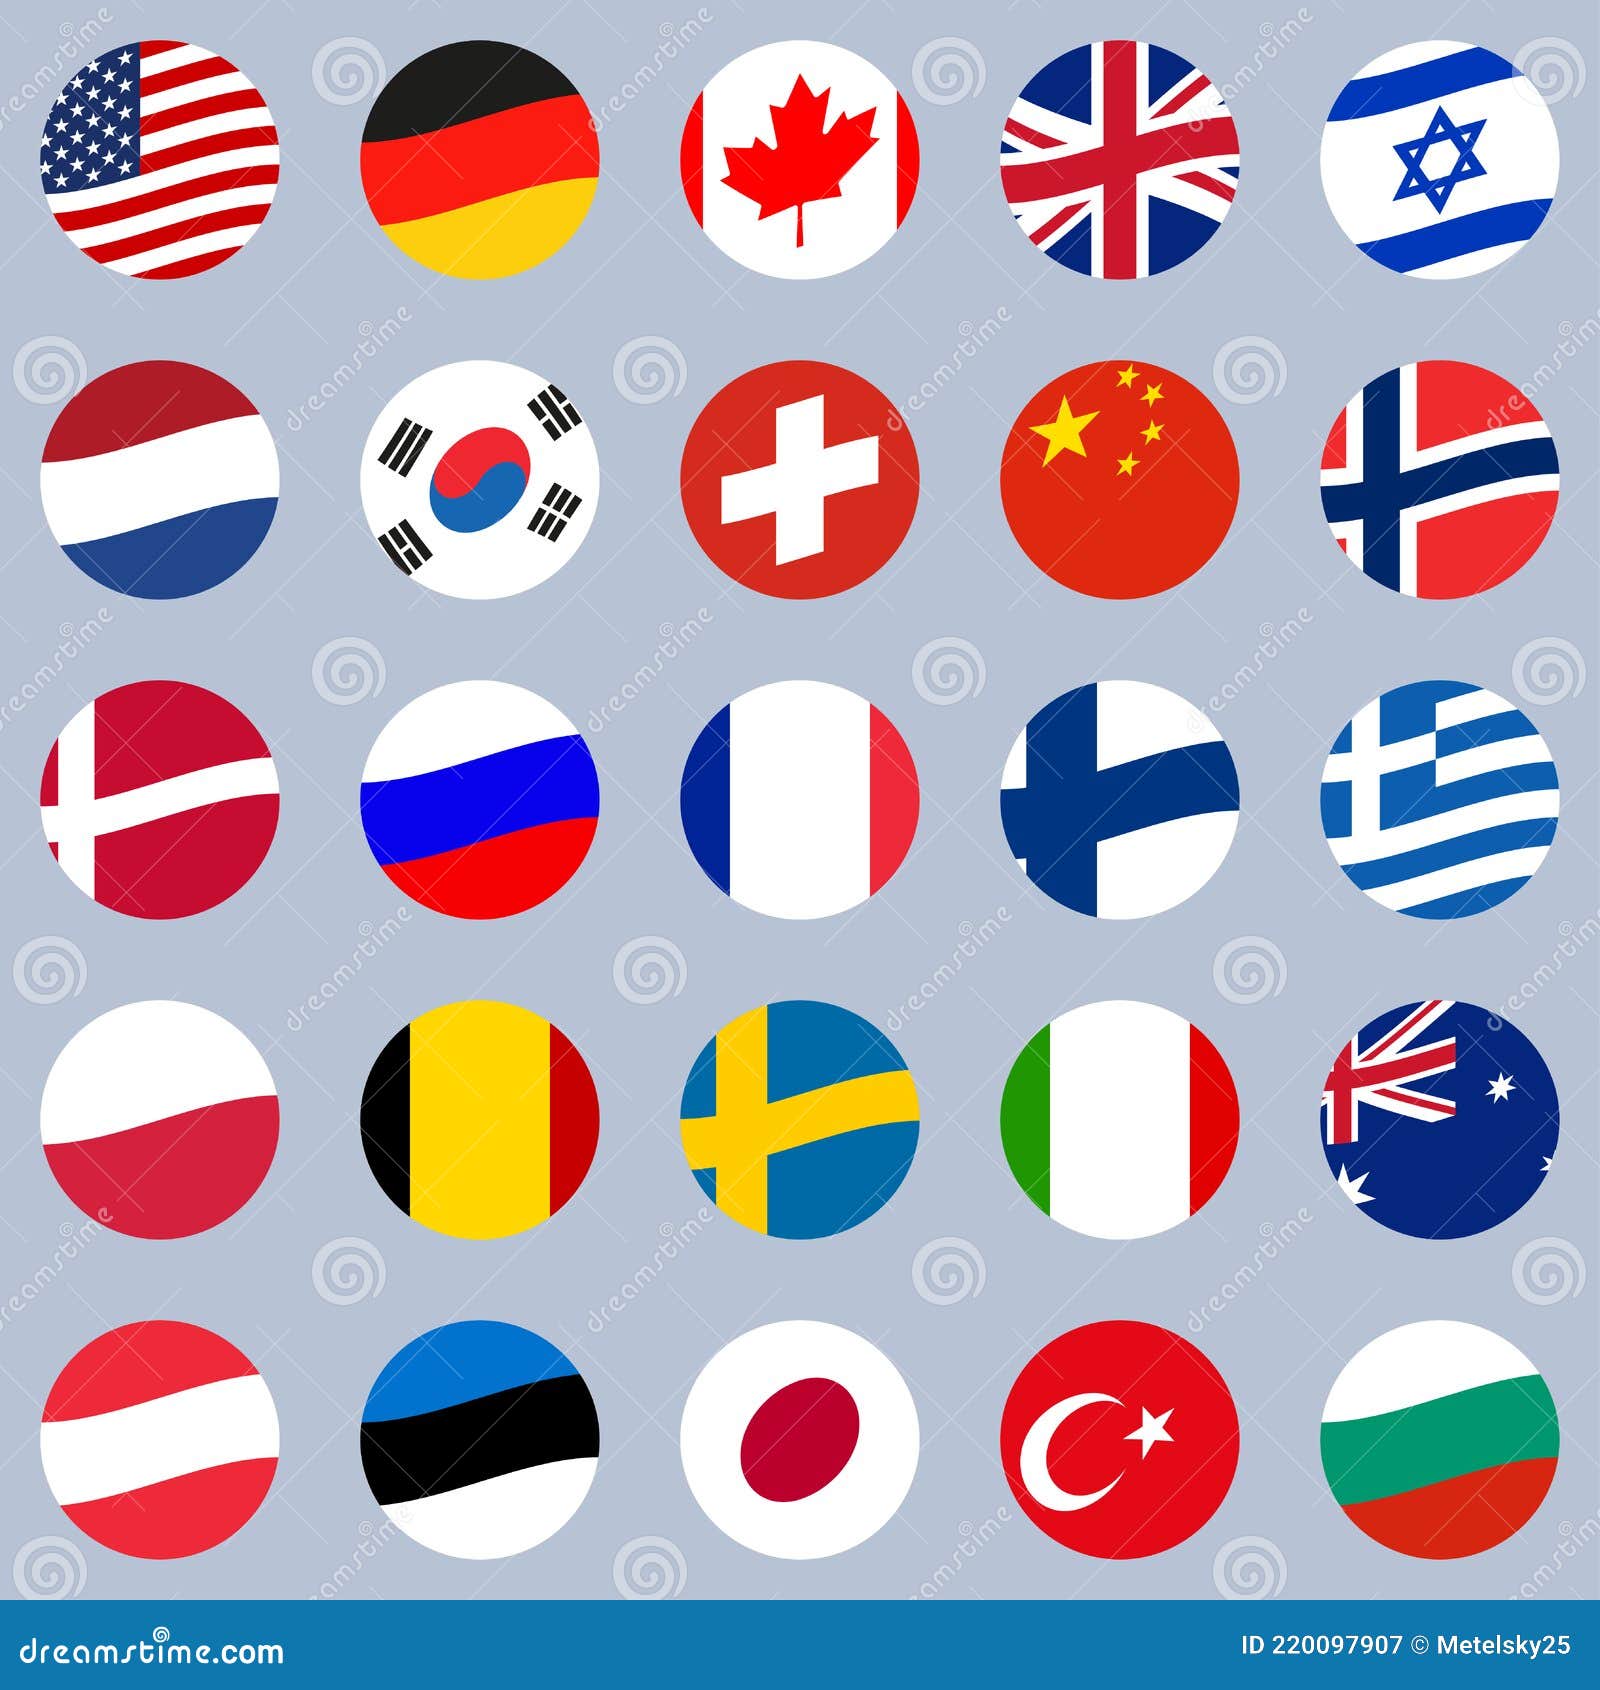 Государственные флаги стран мира в наличии и под заказ | Доставка